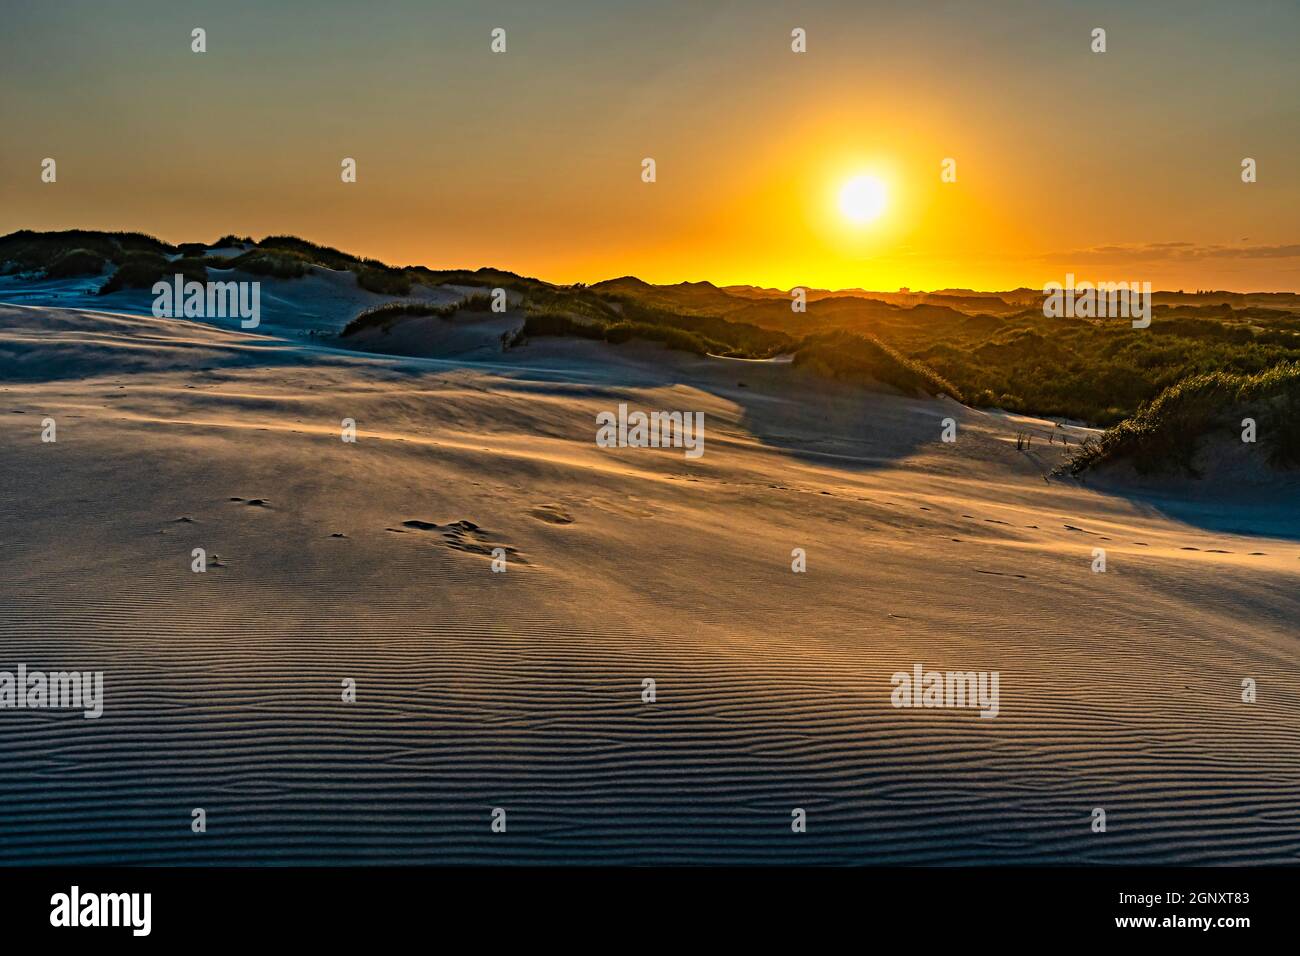 Sich bewegende Sanddünen in der dänischen Wüste bei Sonnenuntergang. Råbjerg Mile, Skagen, Dänemark, Europa Stockfoto